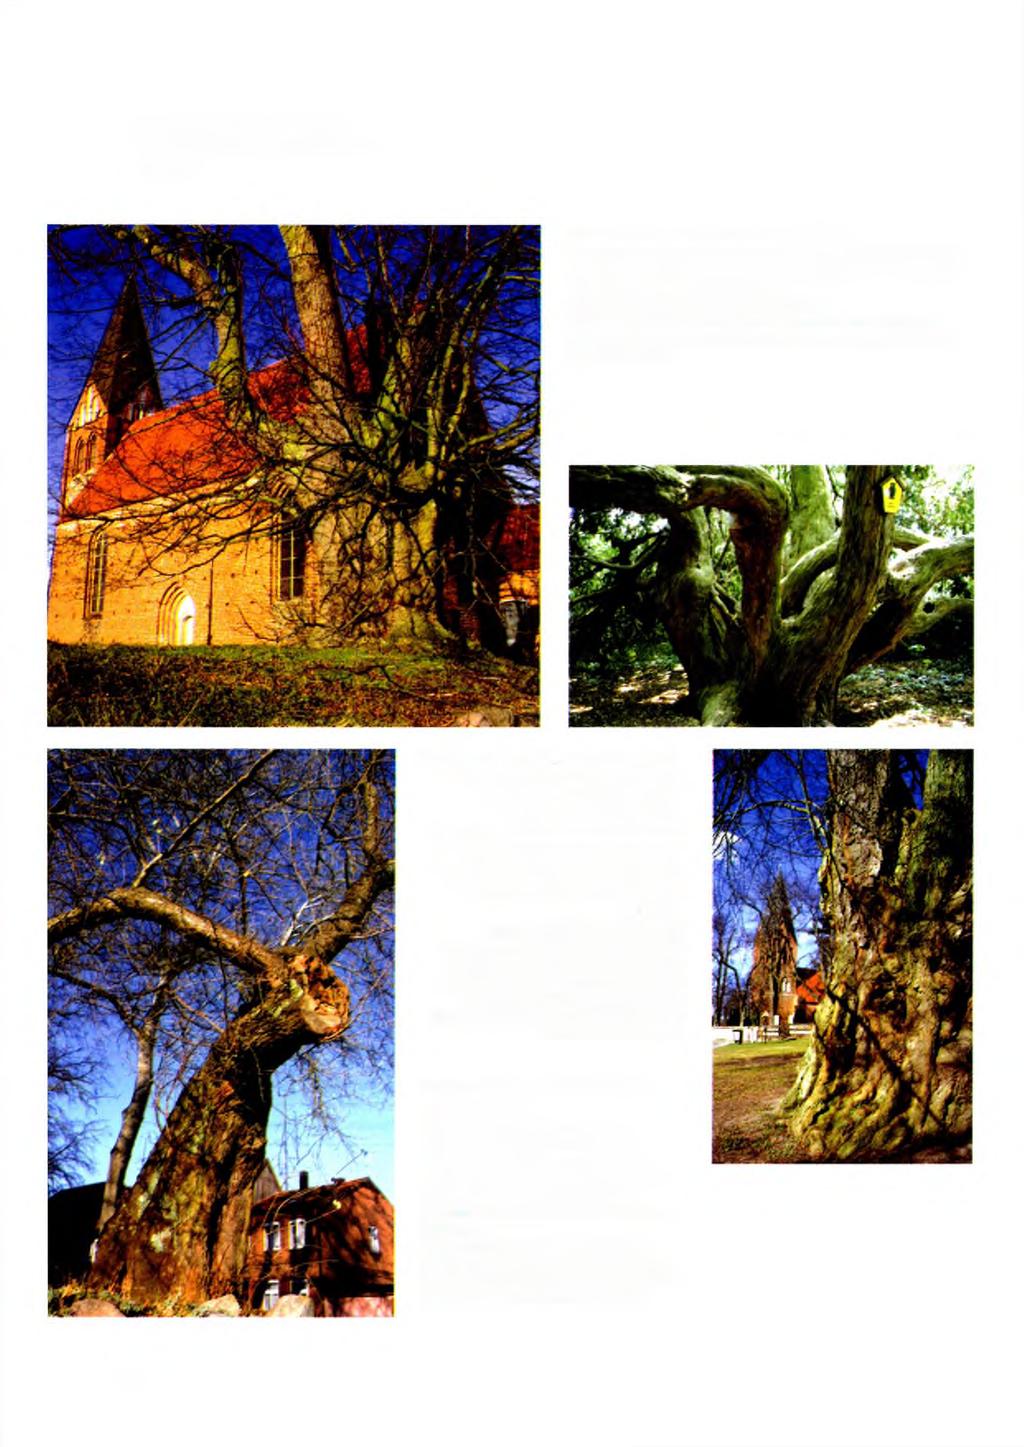 Bemerkenswerte Bäume im Umfeld der untersuchten Kirchen Sommerlinde an der Kirche in Dobbin: Mit einem Stammumfang von 640 cm gehört die Sommerlinde mit zu den ältesten und stärksten Bäumen der